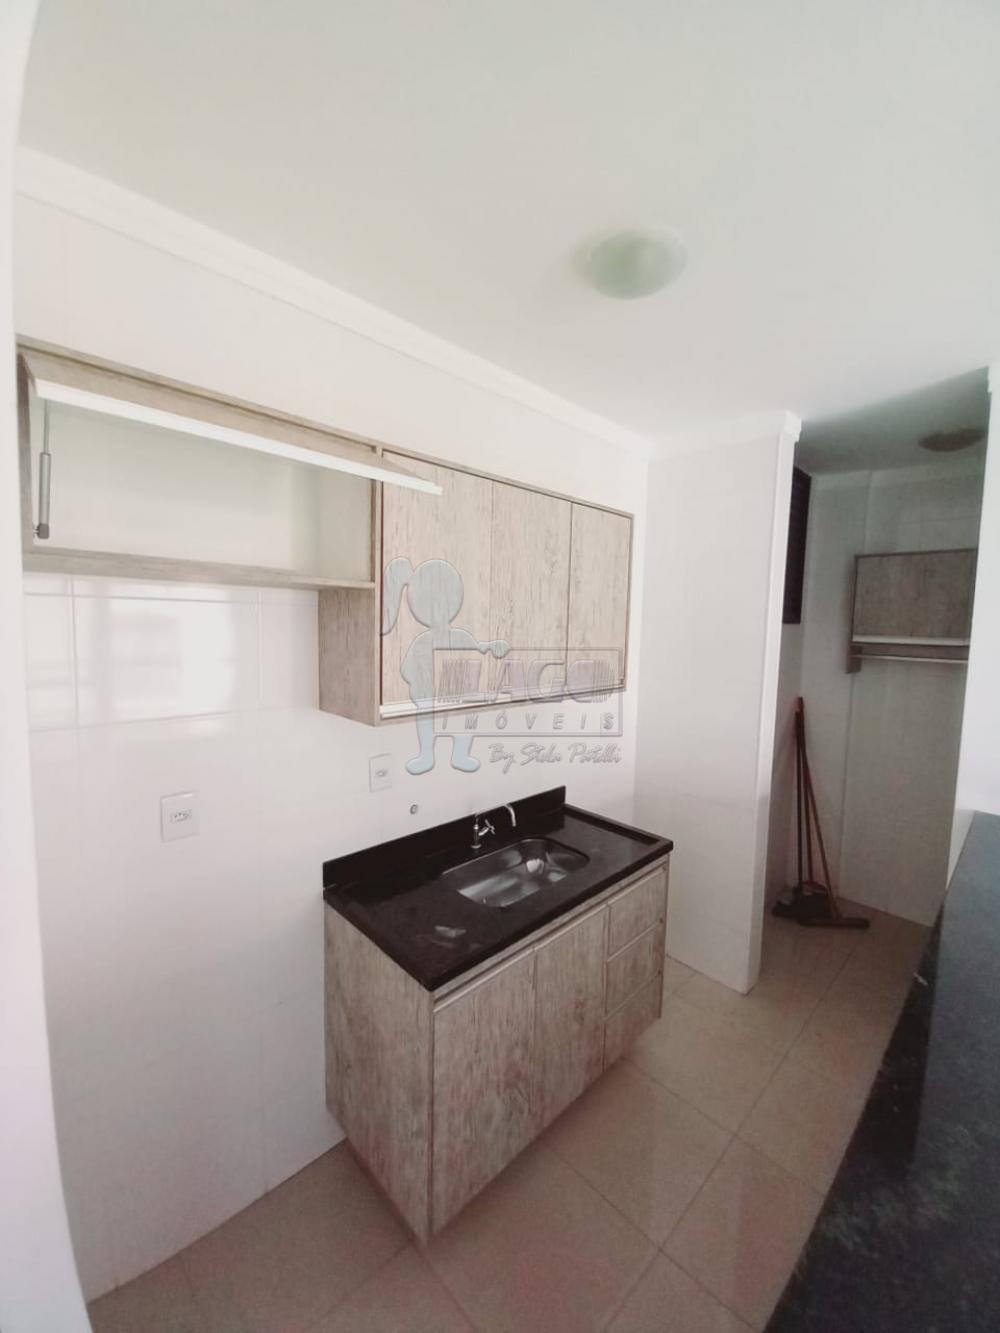 Alugar Apartamentos / Studio / Kitnet em Ribeirão Preto R$ 950,00 - Foto 6